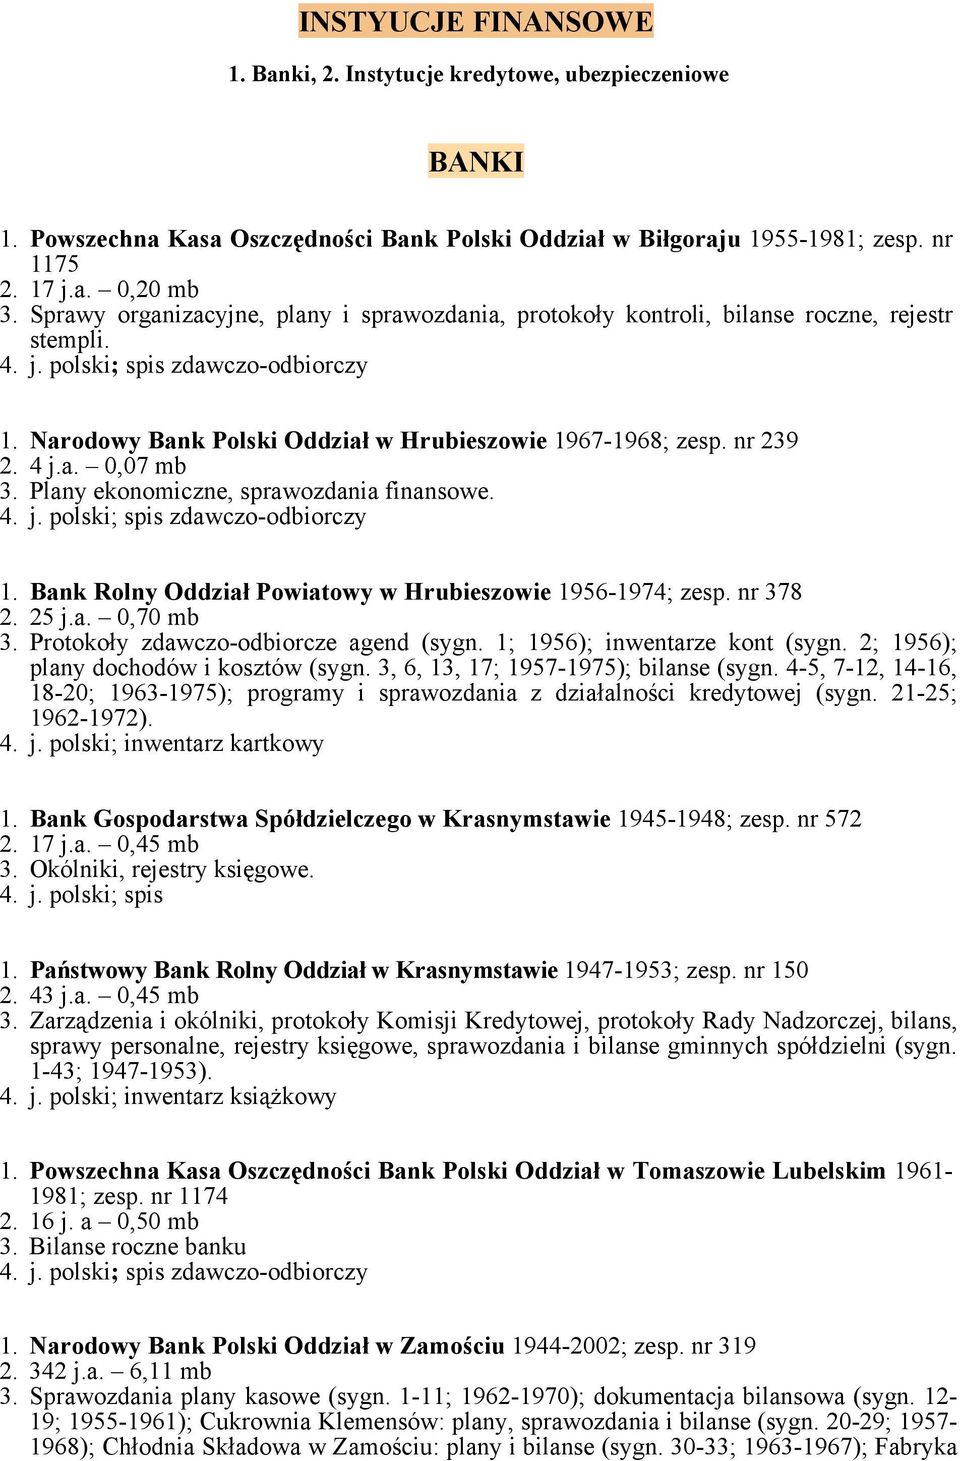 Plany ekonomiczne, sprawozdania finansowe. 1. Bank Rolny Oddział Powiatowy w Hrubieszowie 1956-1974; zesp. nr 378 2. 25 j.a. 0,70 mb 3. Protokoły zdawczo-odbiorcze agend (sygn.